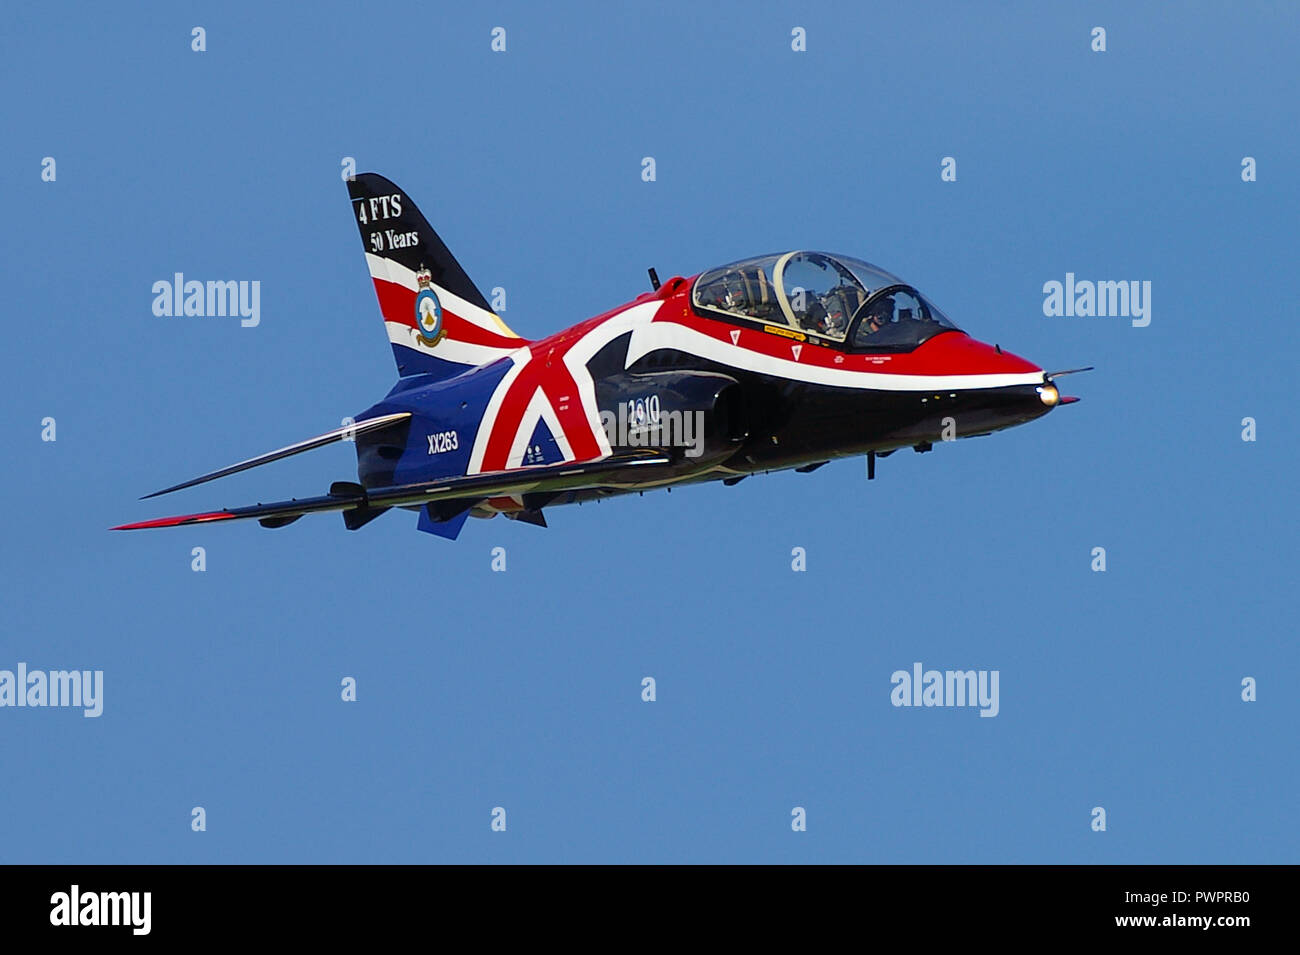 RAF Royal Air Force BAe Hawk T1 nello speciale schema di vernice British Union Jack per essere esposto agli airshow. Union Flag. Volare nel cielo blu Foto Stock